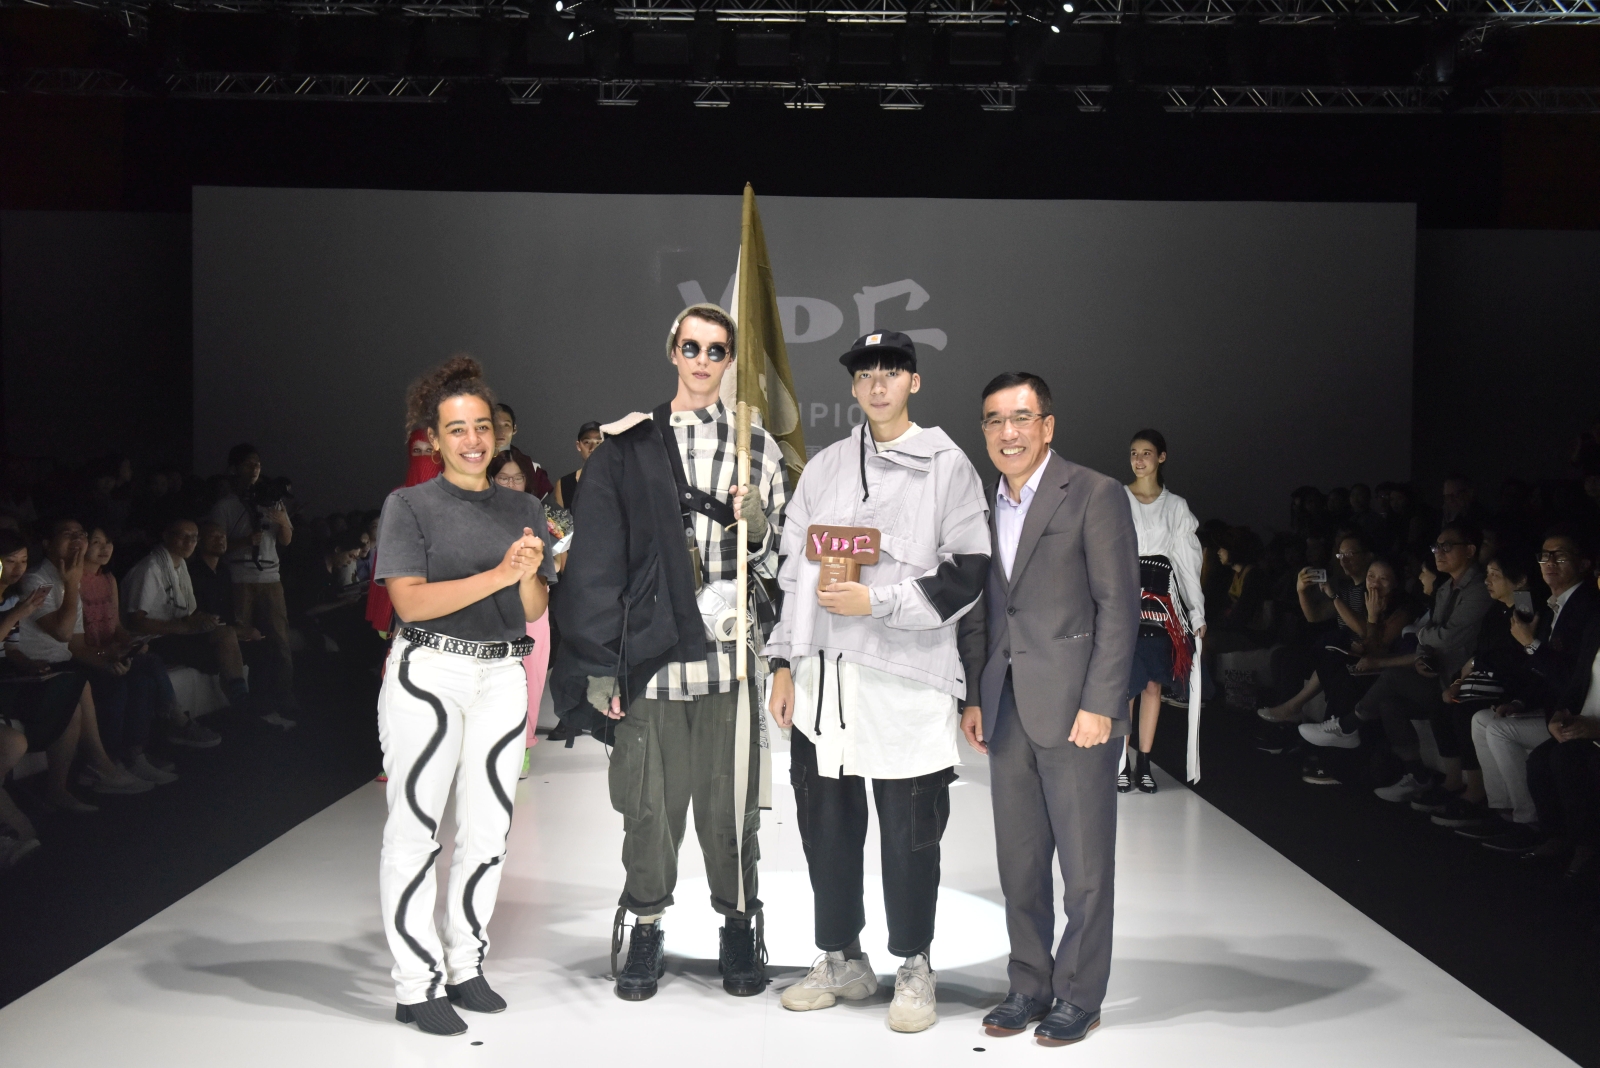 HKDI時裝設計高級文憑畢業生陳星彤（右二）奪得「香港青年時裝設計家創作表演賽2018」冠軍，將獲贊助前往Martine ROSE工作室實習一個月

（照片由香港貿易發展局提供）